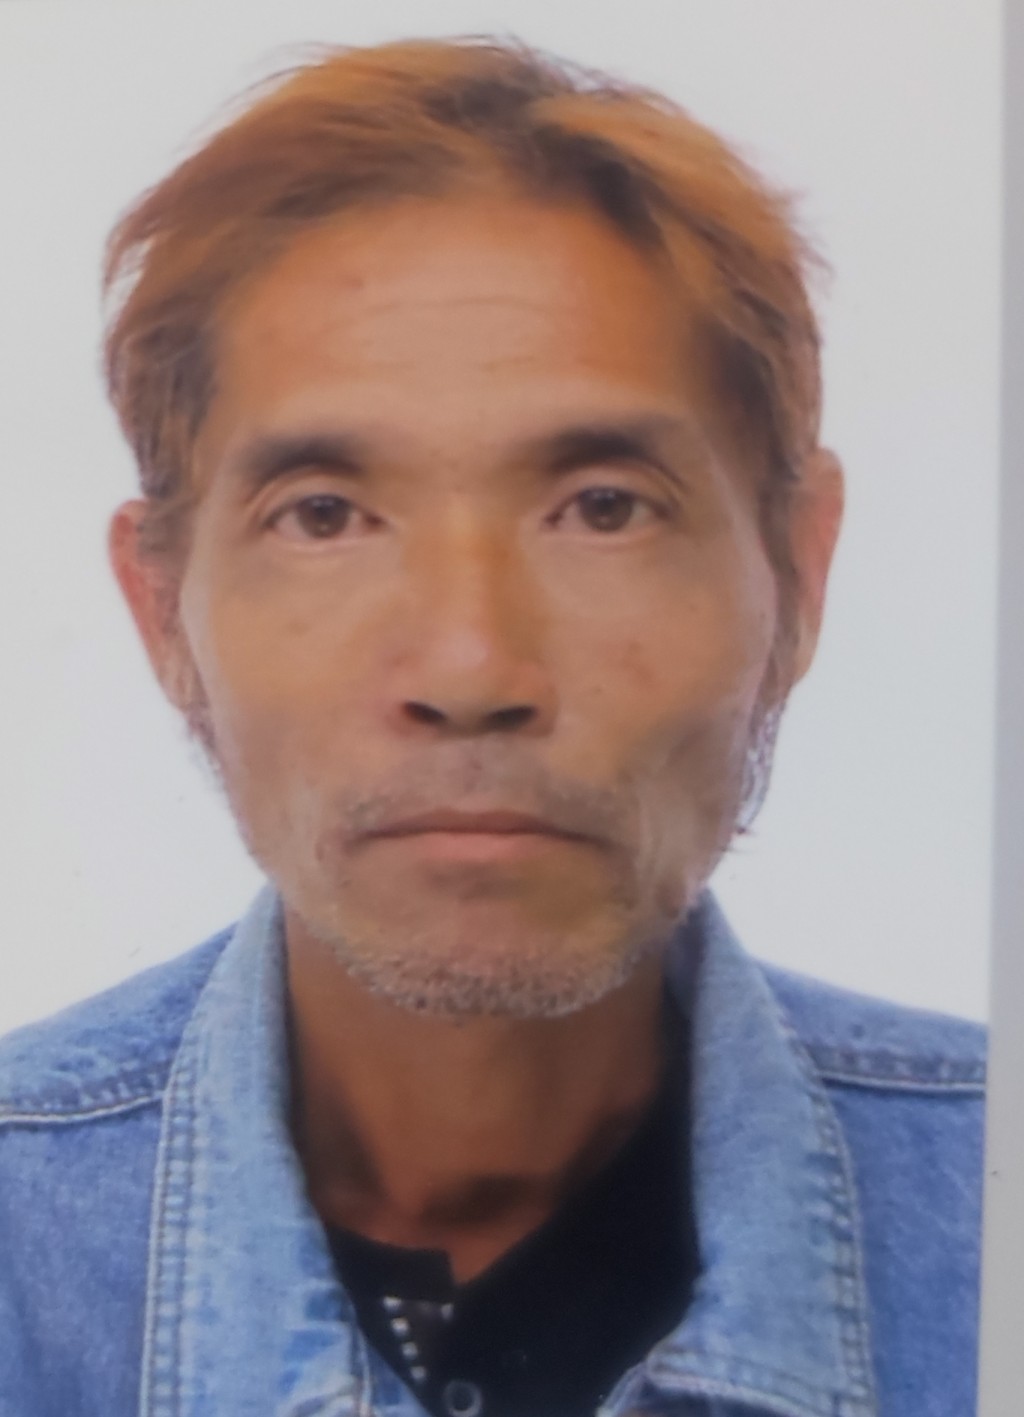 55歲男子李錦昌2020年11月21日在葵涌最後露面後便告失蹤。警方提供